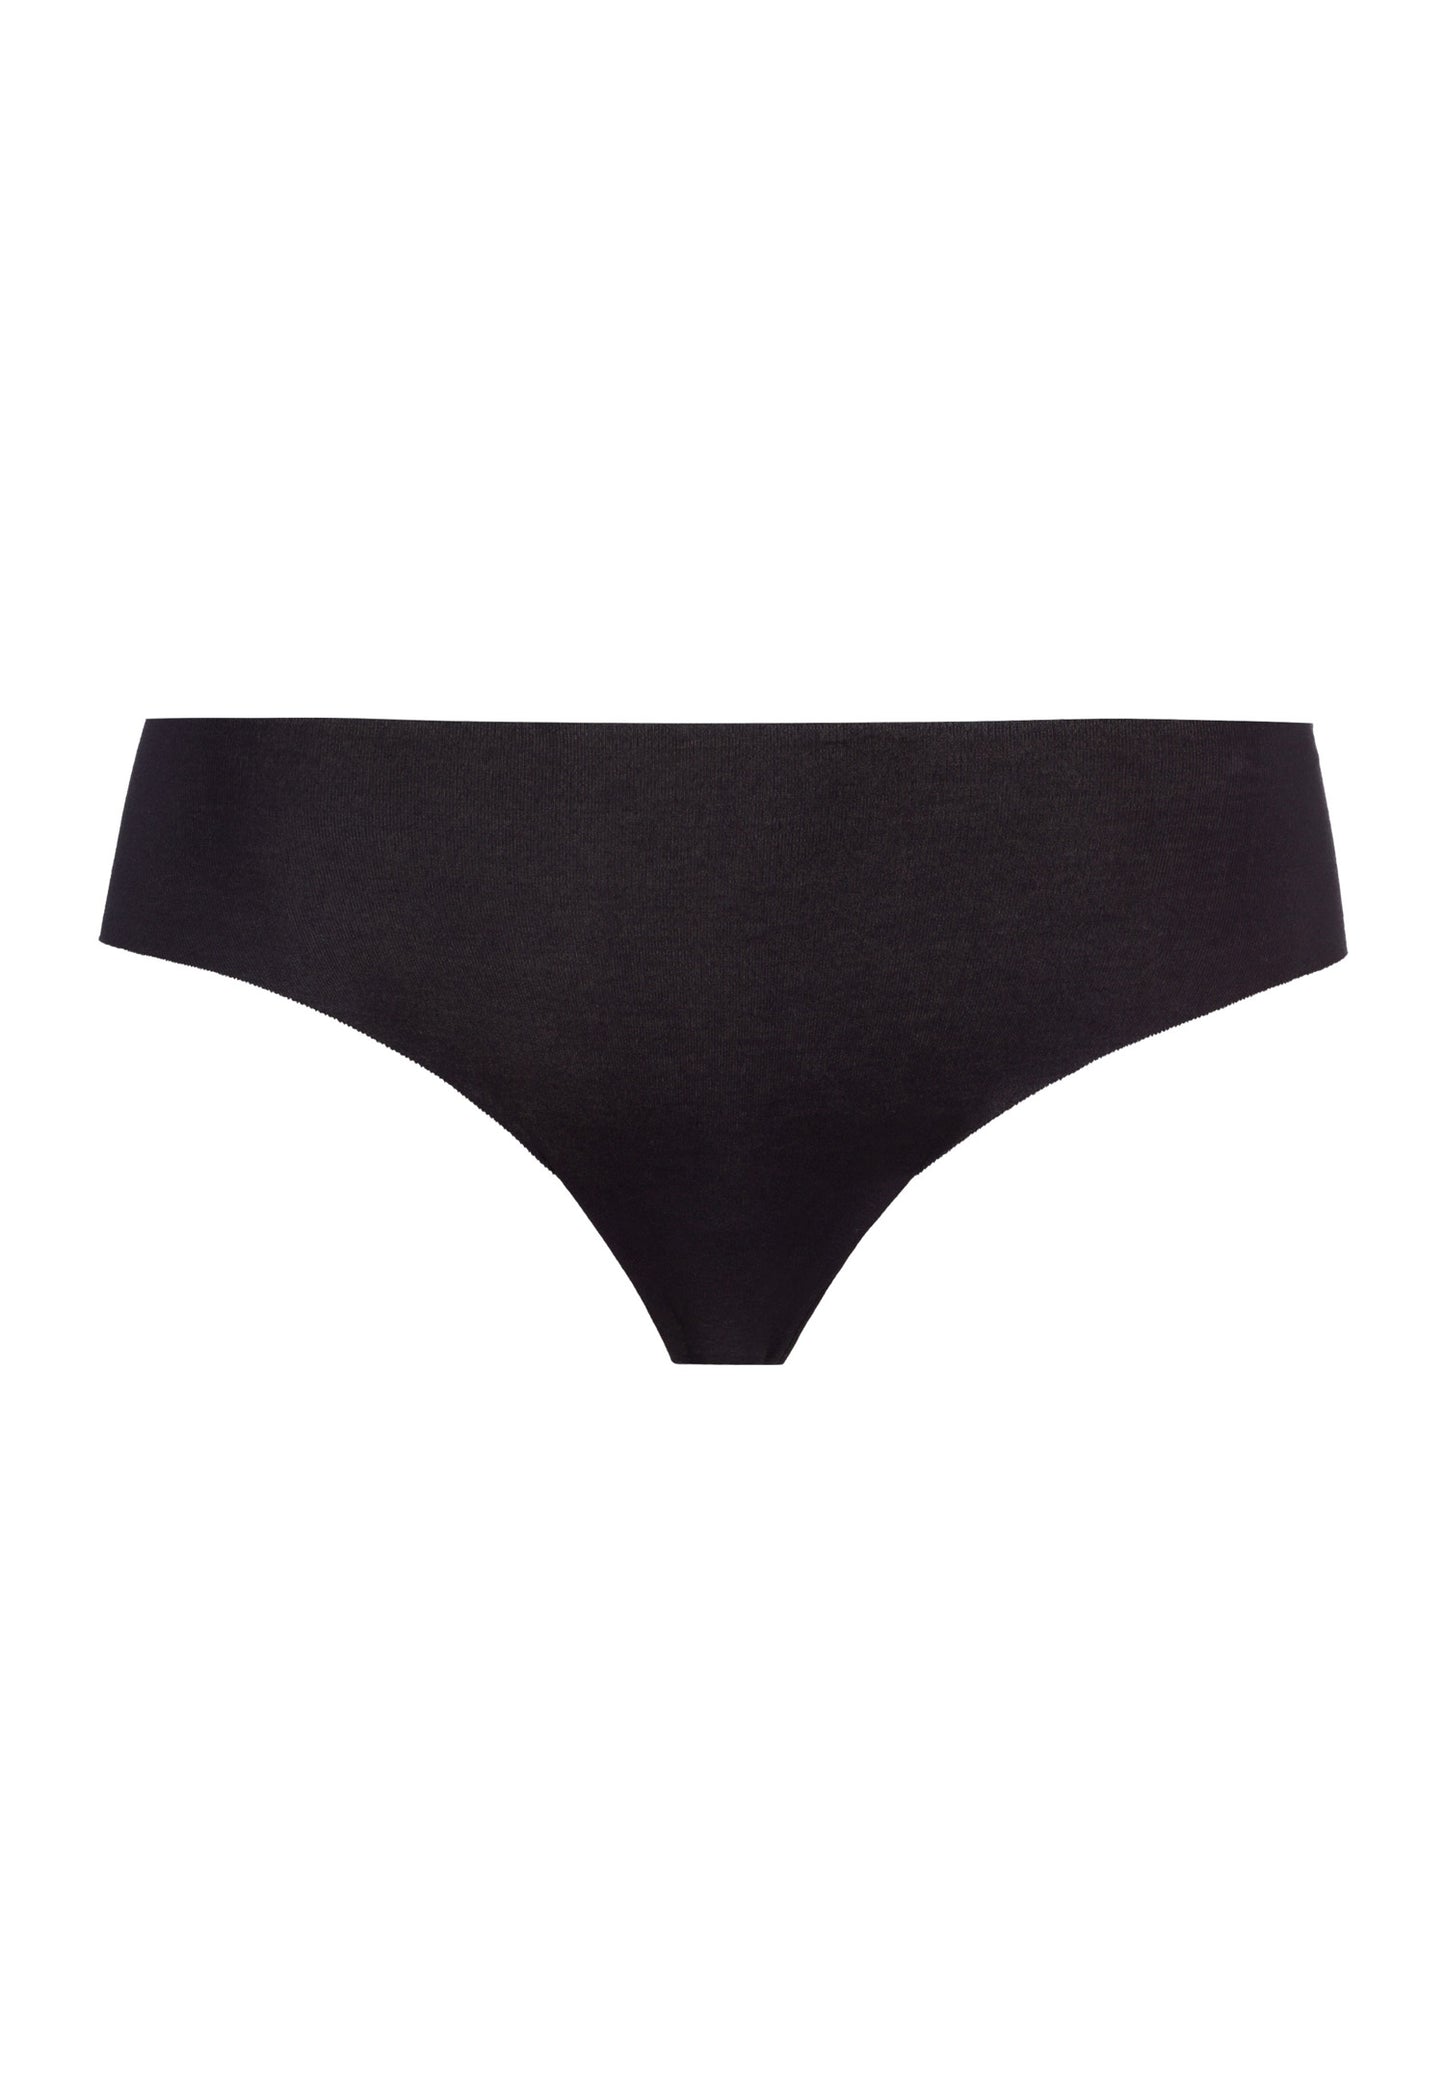 HANRO Black Invisible Cotton Brazilian Cut Pant